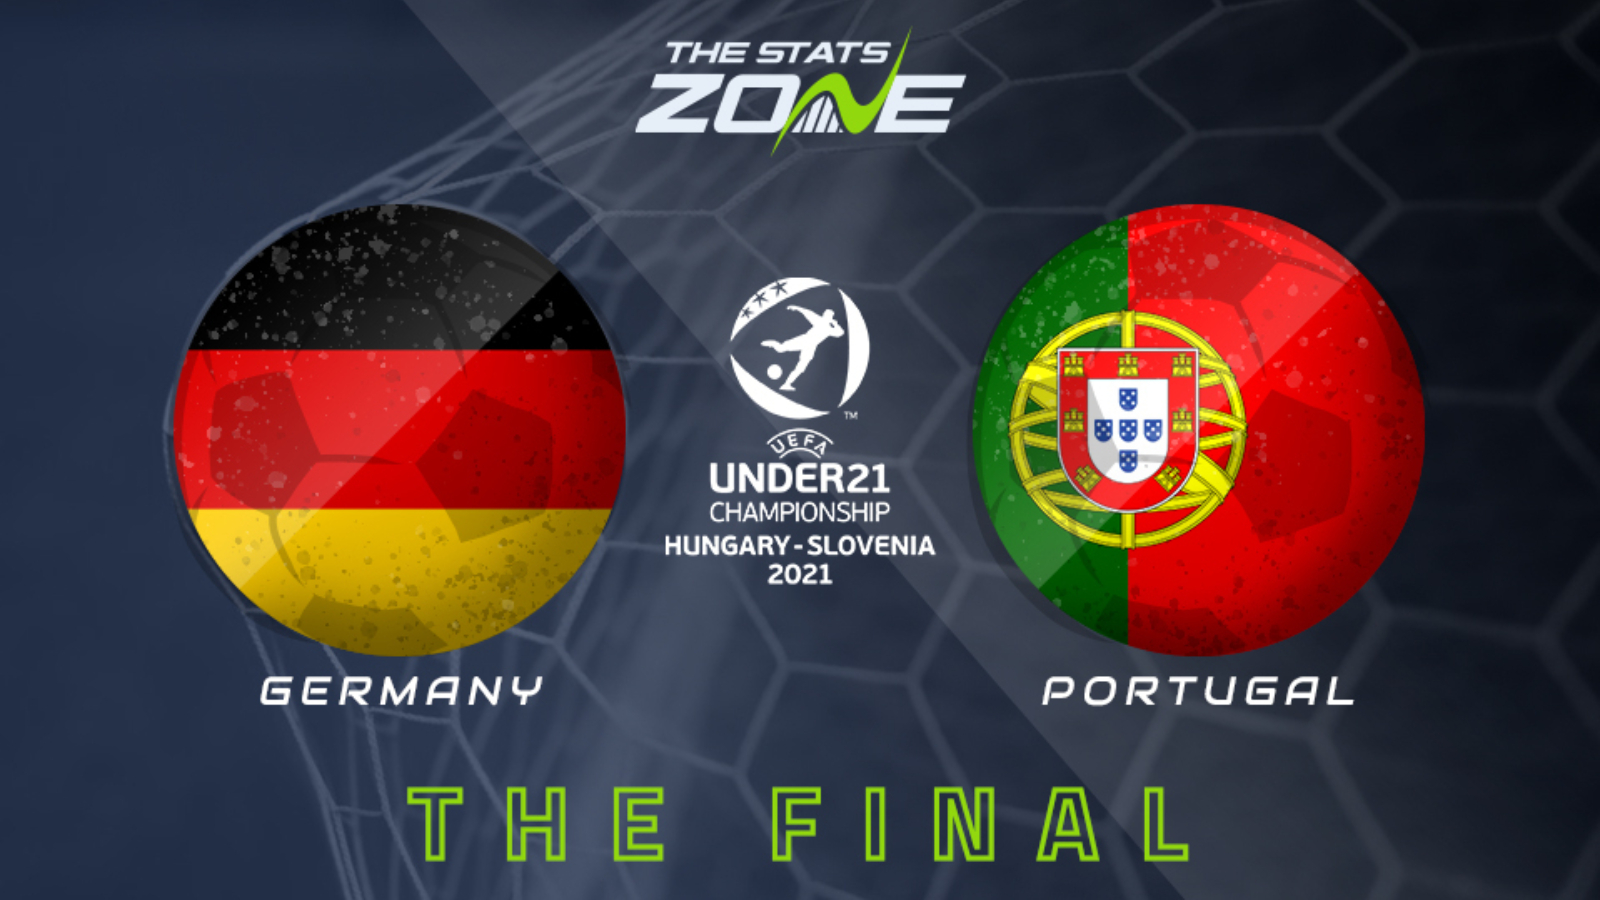 Germany vs portugal prediction